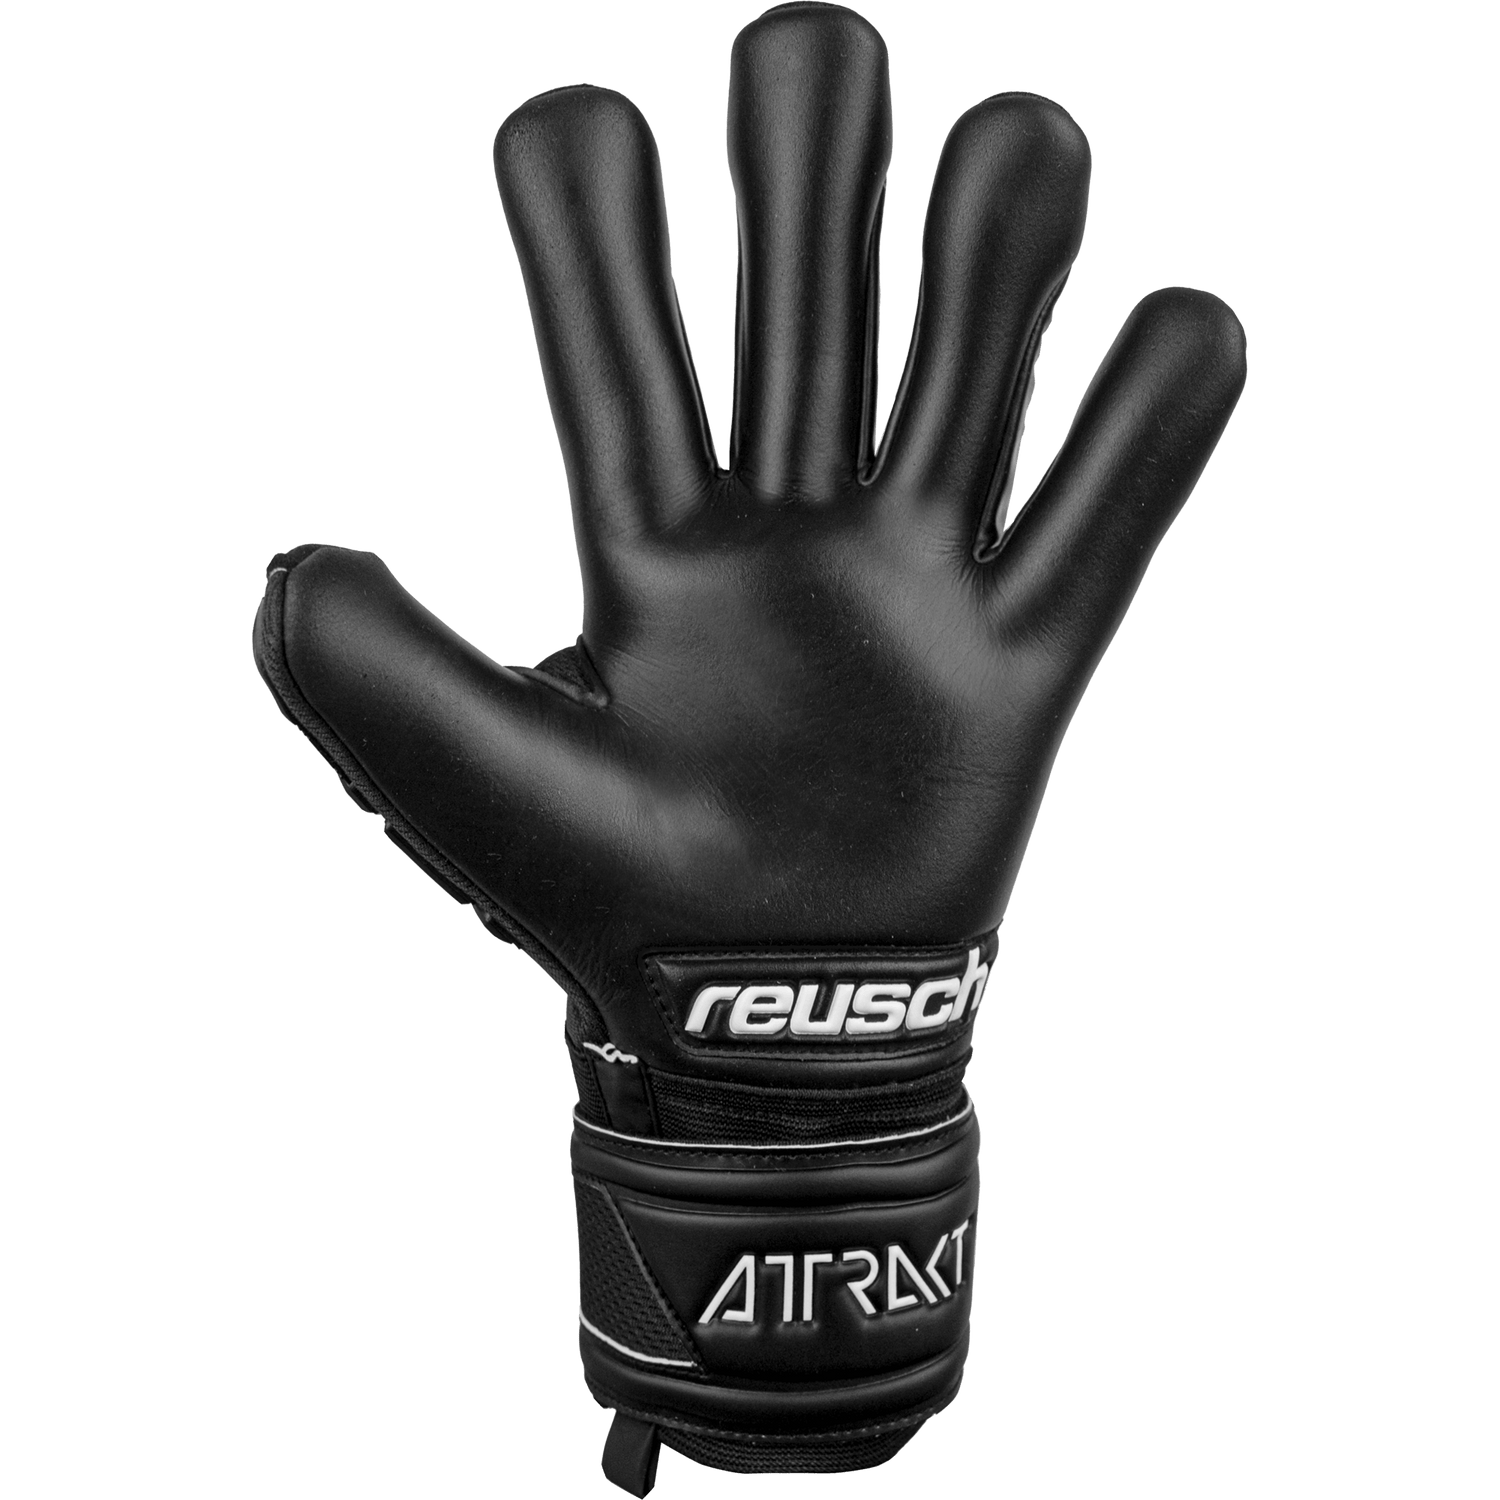 Reusch Attrakt Freegel Infinity FS Goalkeeper Glove - Black (Single - Inner)